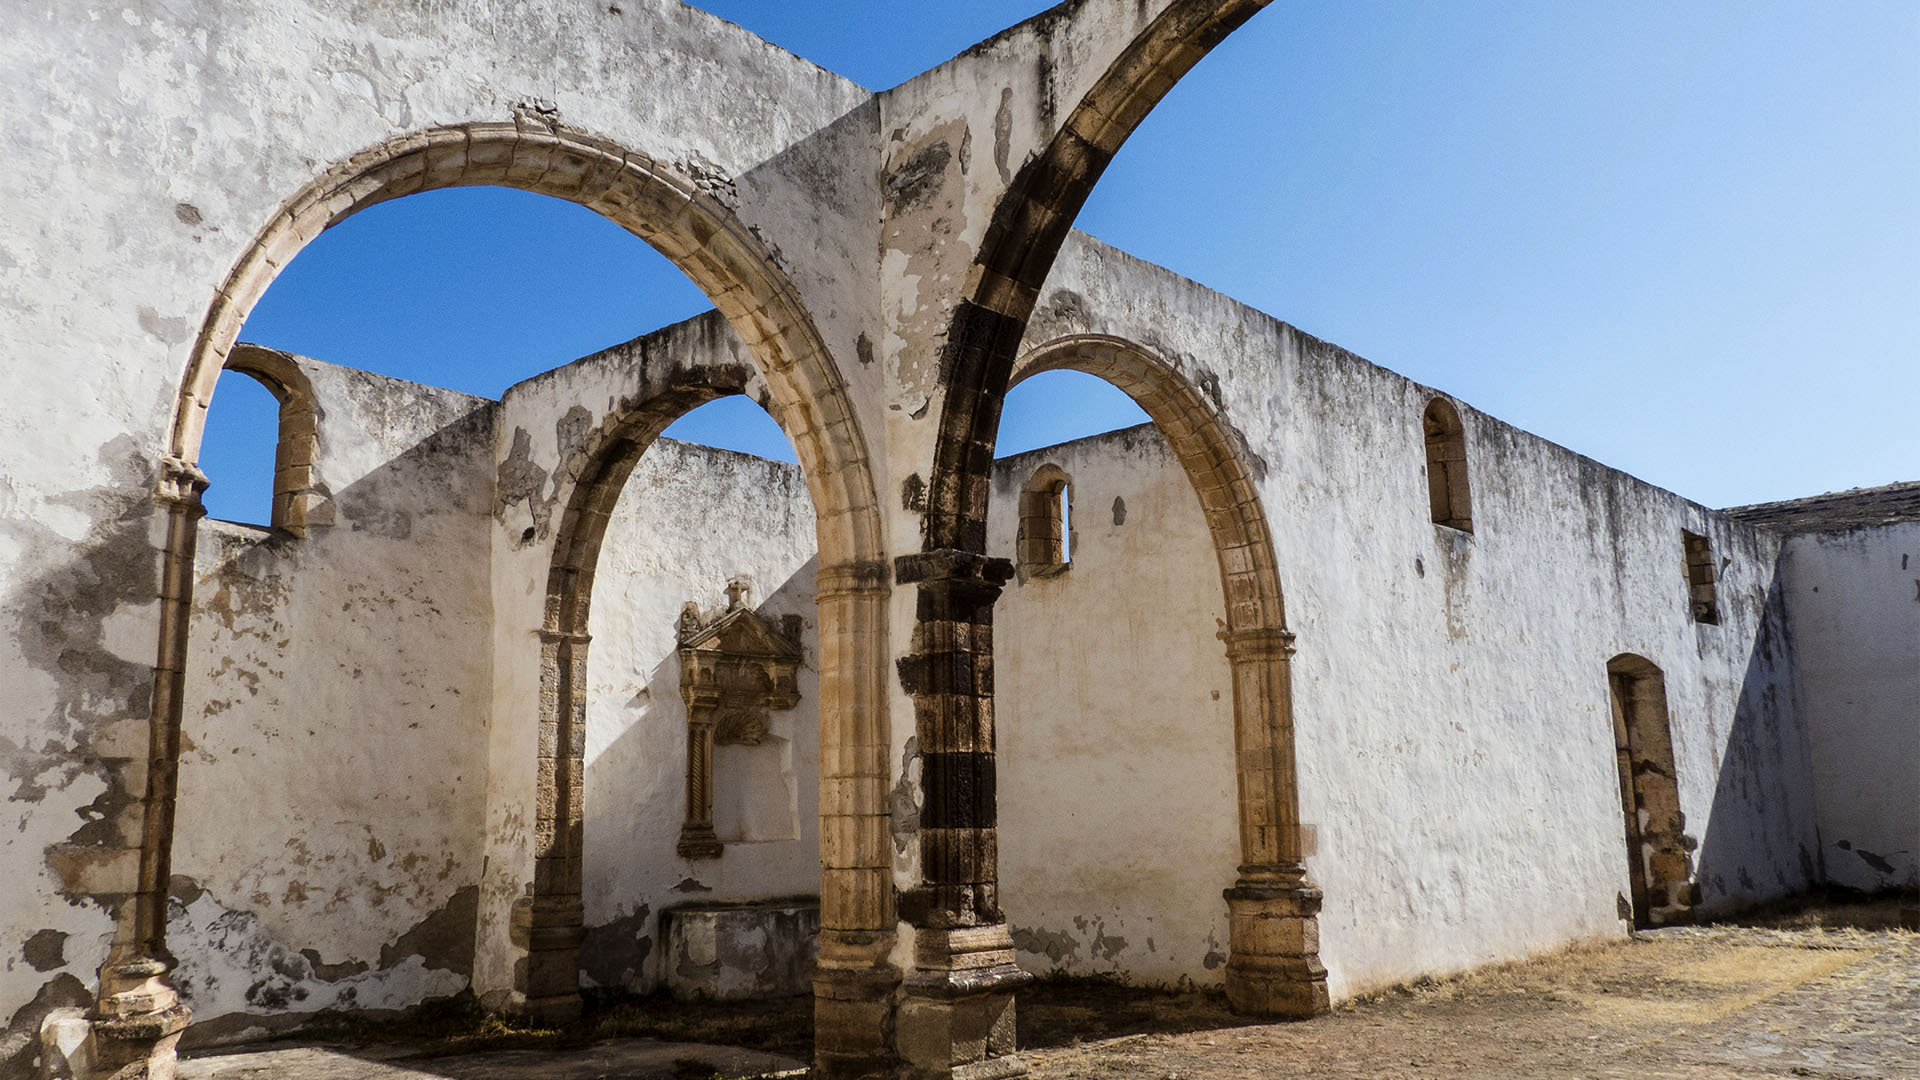 Das Franziskaner Kloster Buena Fuerteventura in Betancuria – das erste Kloster des Archipels.